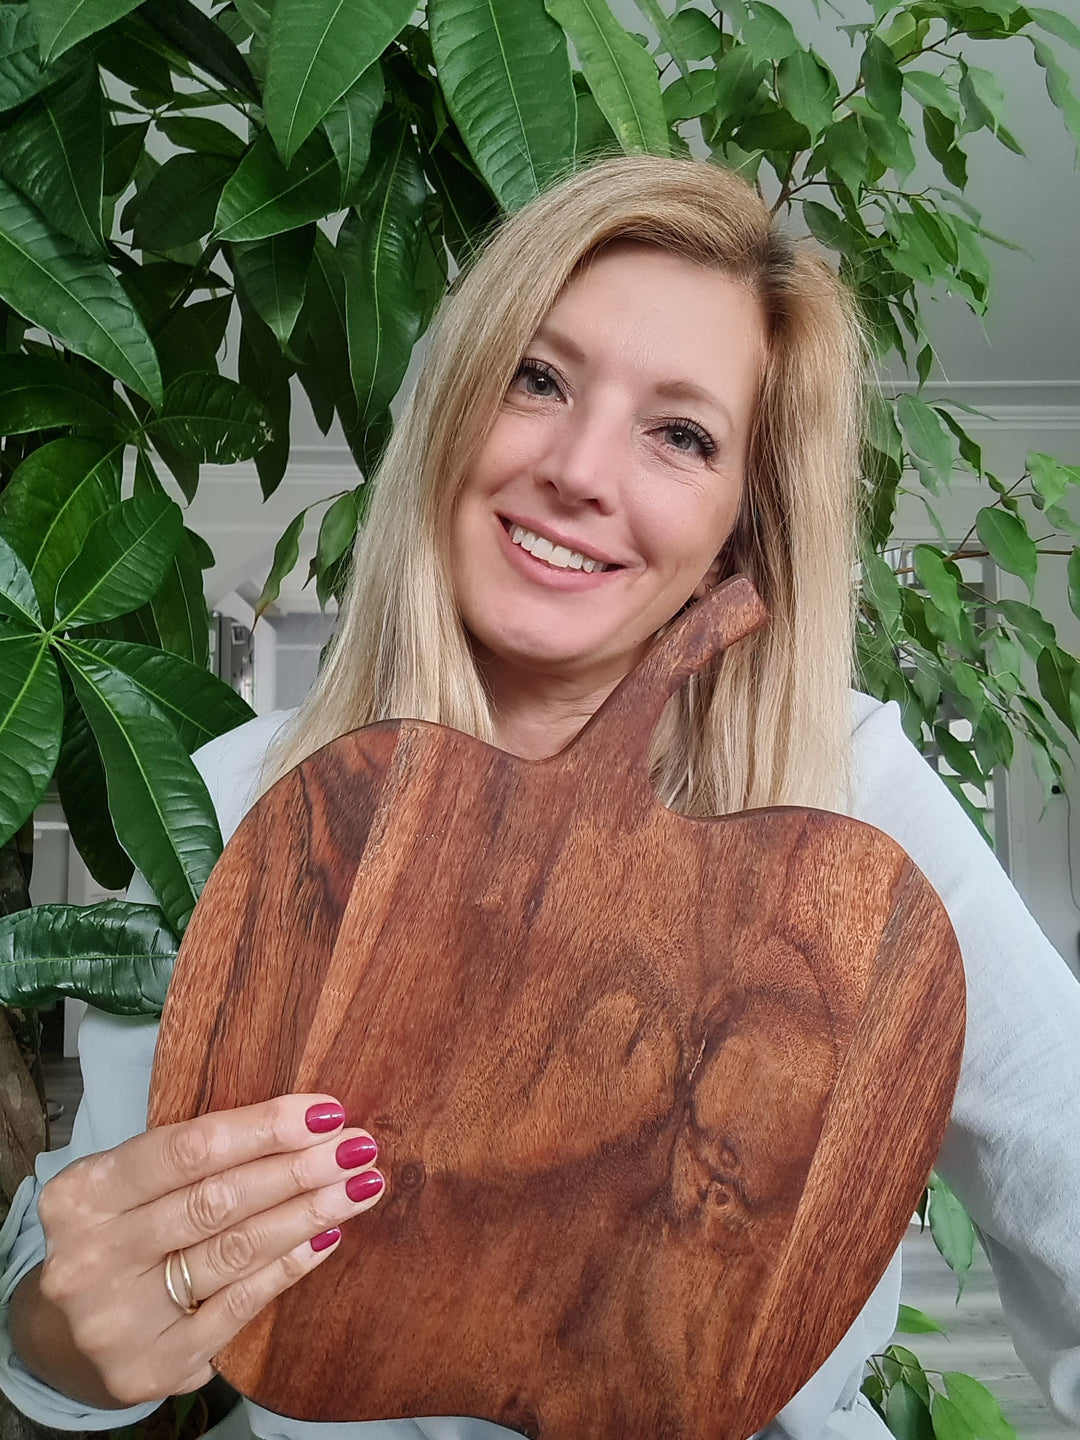 Eine blonde Frau hält ein Stück Holz unter einer Pflanze stehend und lächelt in die Kamera, Jil, die Gründerin der Firma Juvahem